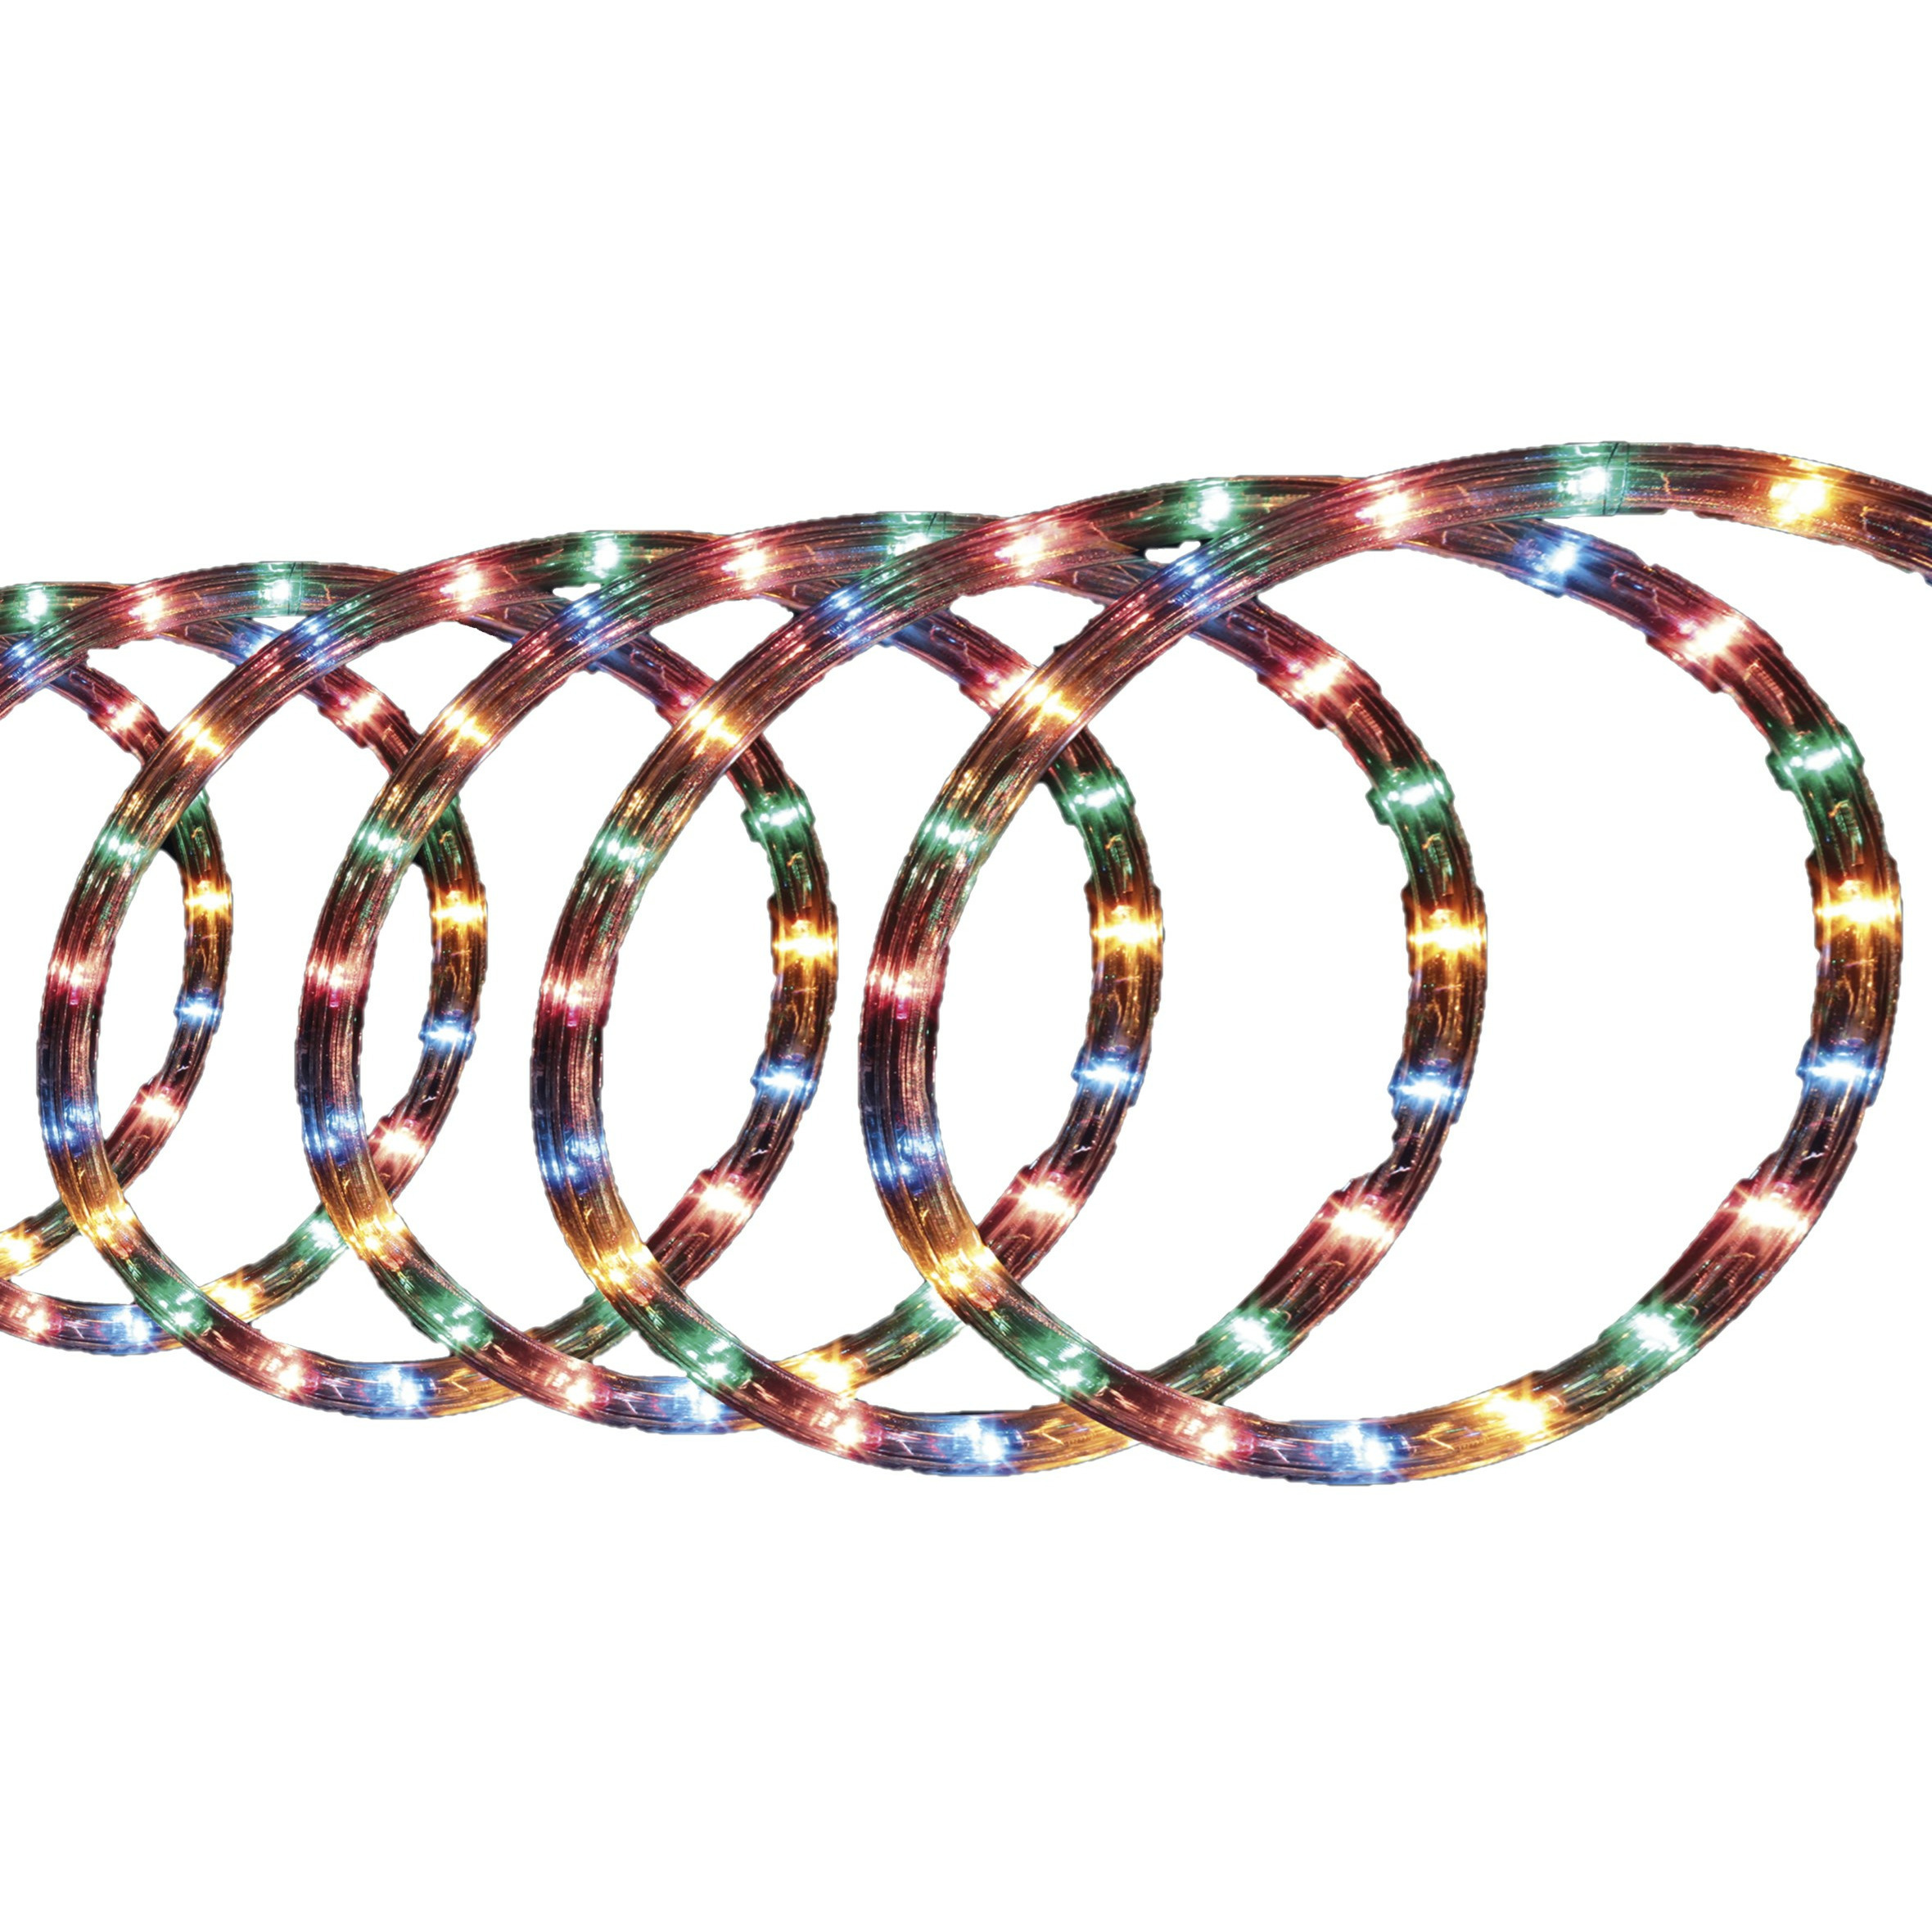 Lichtslang-slangverlichting 10 meter met 180 lampjes gekleurd